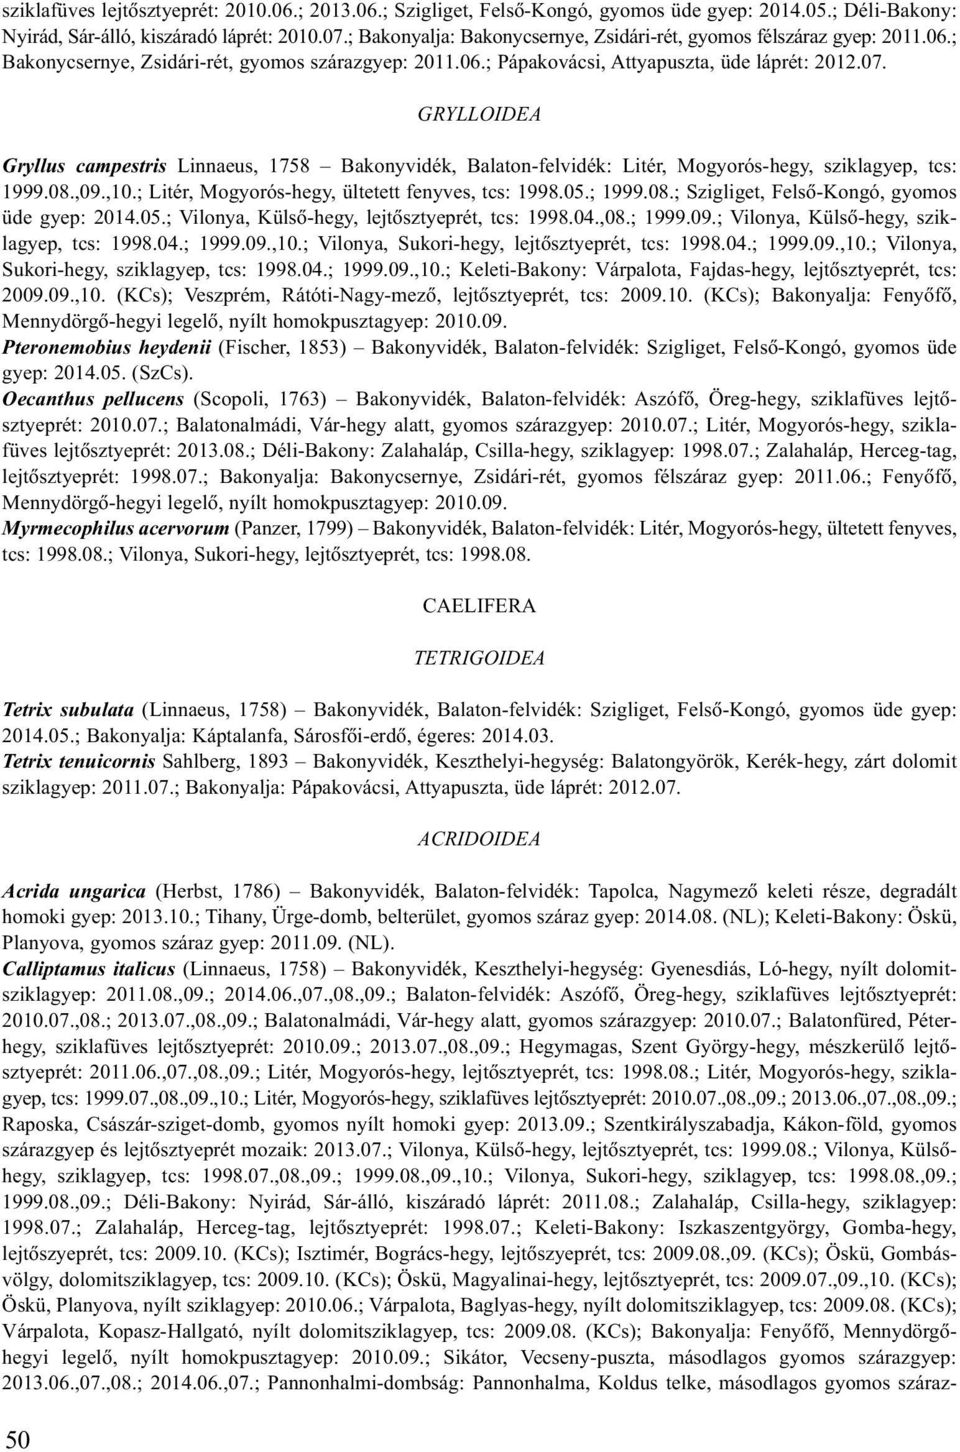 GRYLLOIDEA Gryllus campestris Linnaeus, 1758 Bakonyvidék, Balaton-felvidék: Litér, Mogyorós-hegy, sziklagyep, tcs: 1999.08.,09.,10.; Litér, Mogyorós-hegy, ültetett fenyves, tcs: 1998.05.; 1999.08.; Szigliget, Felsõ-Kongó, gyomos üde gyep: 2014.